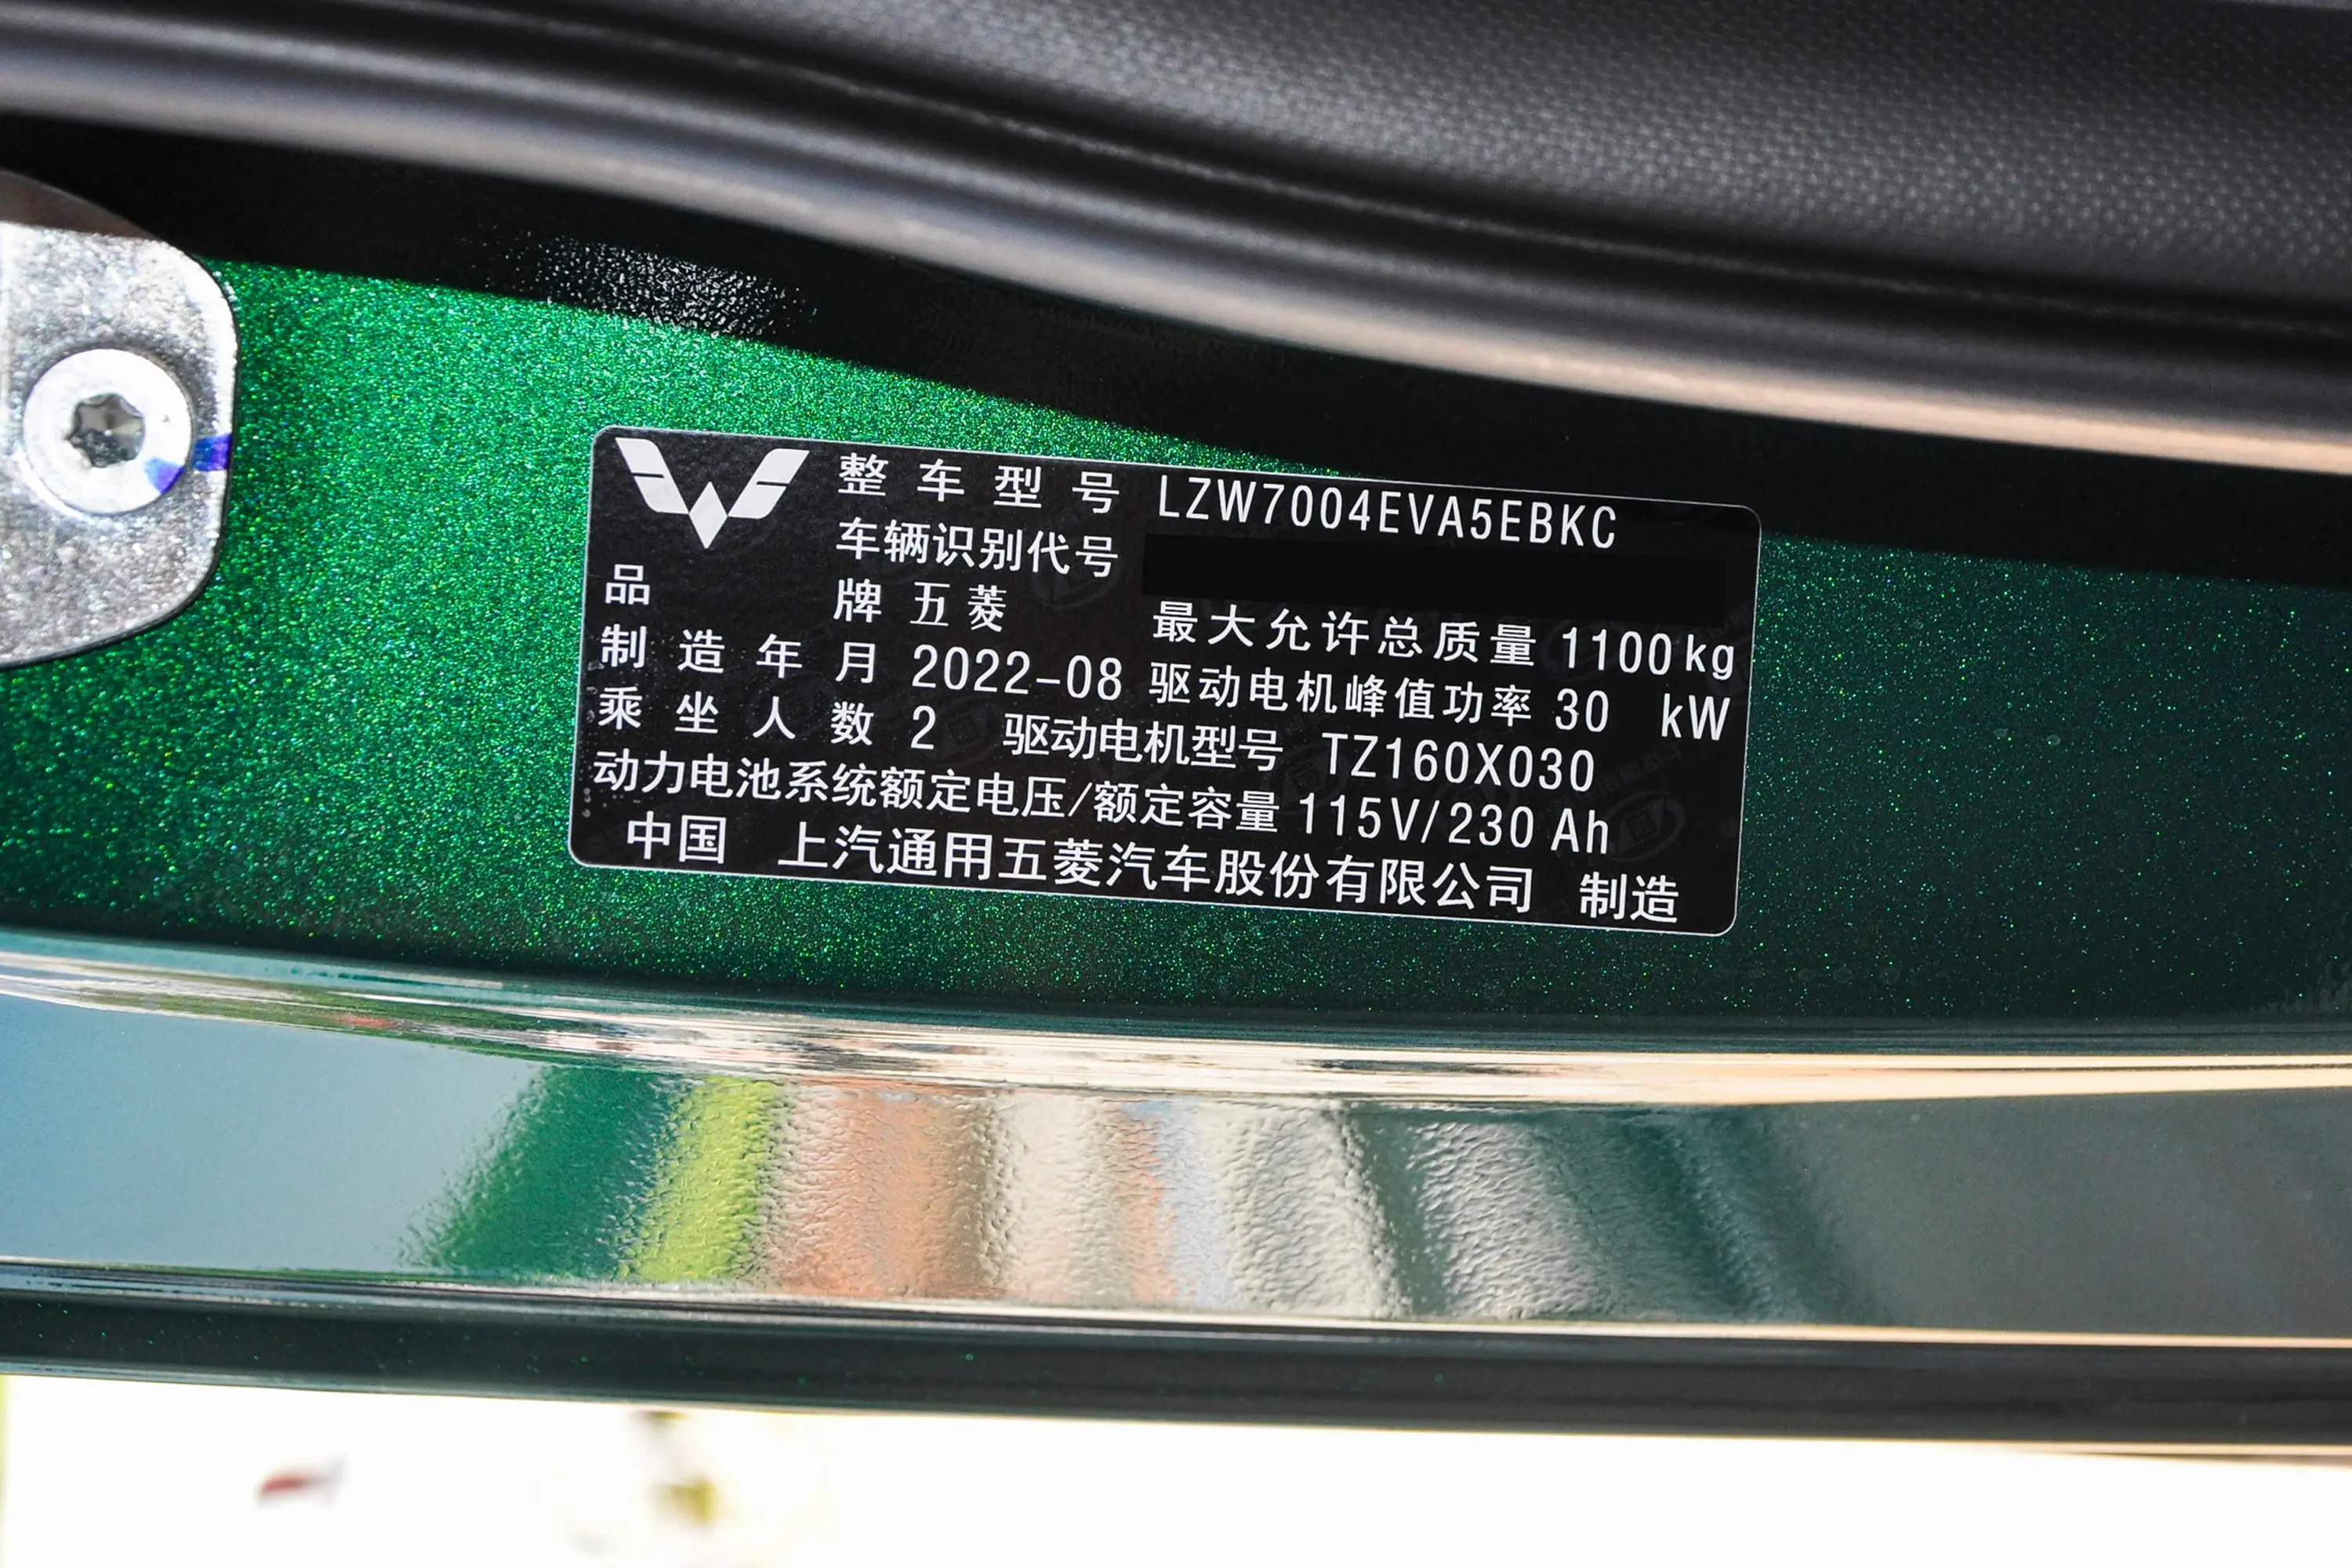 宏光MINIEV敞篷版 280km 磷酸铁锂车辆信息铭牌